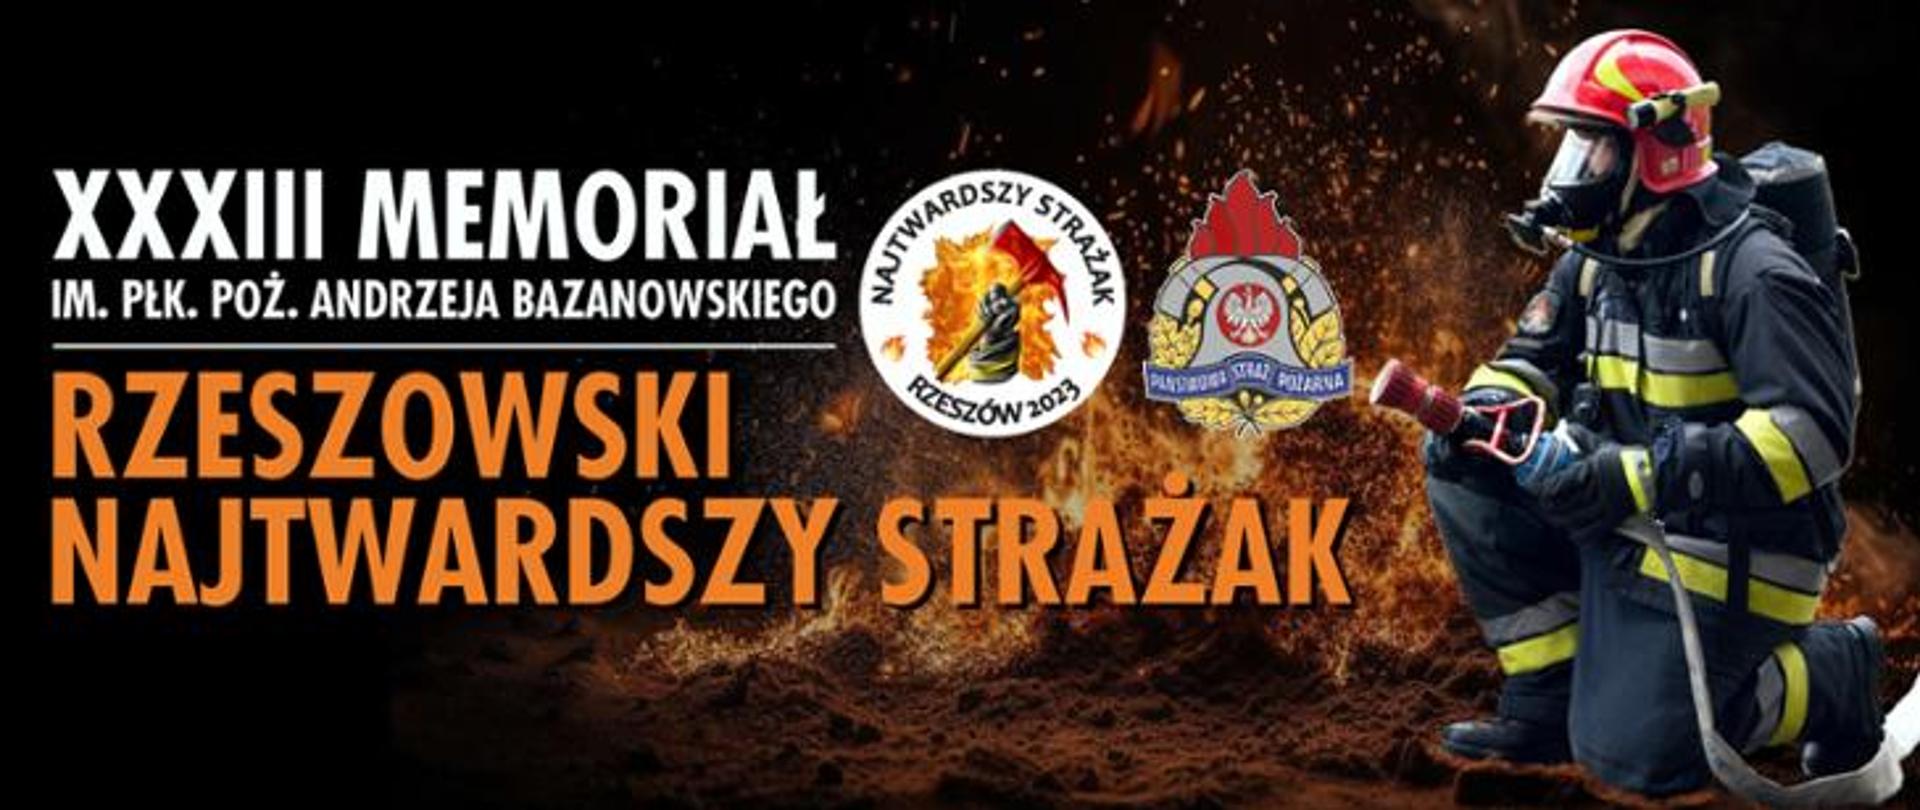 XXXIII Memoriał Bazanowskiego - plakat